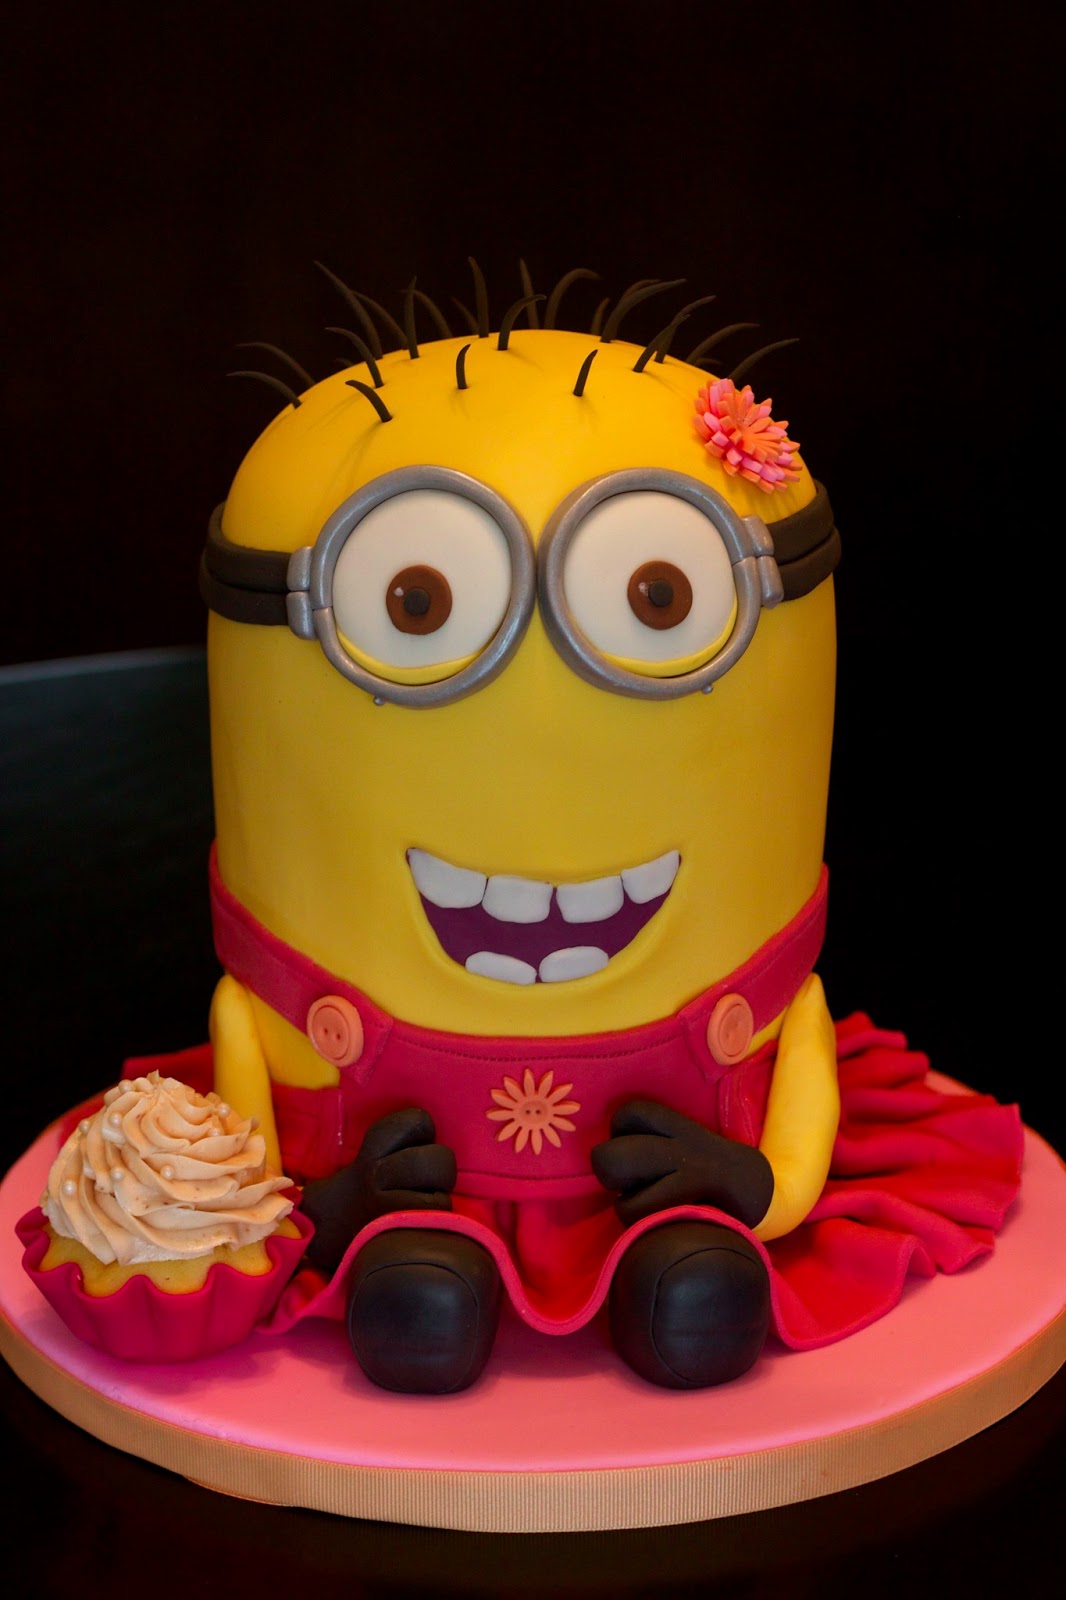 Pretty Minion Cake Design | 13 Incredibly Cute And ...